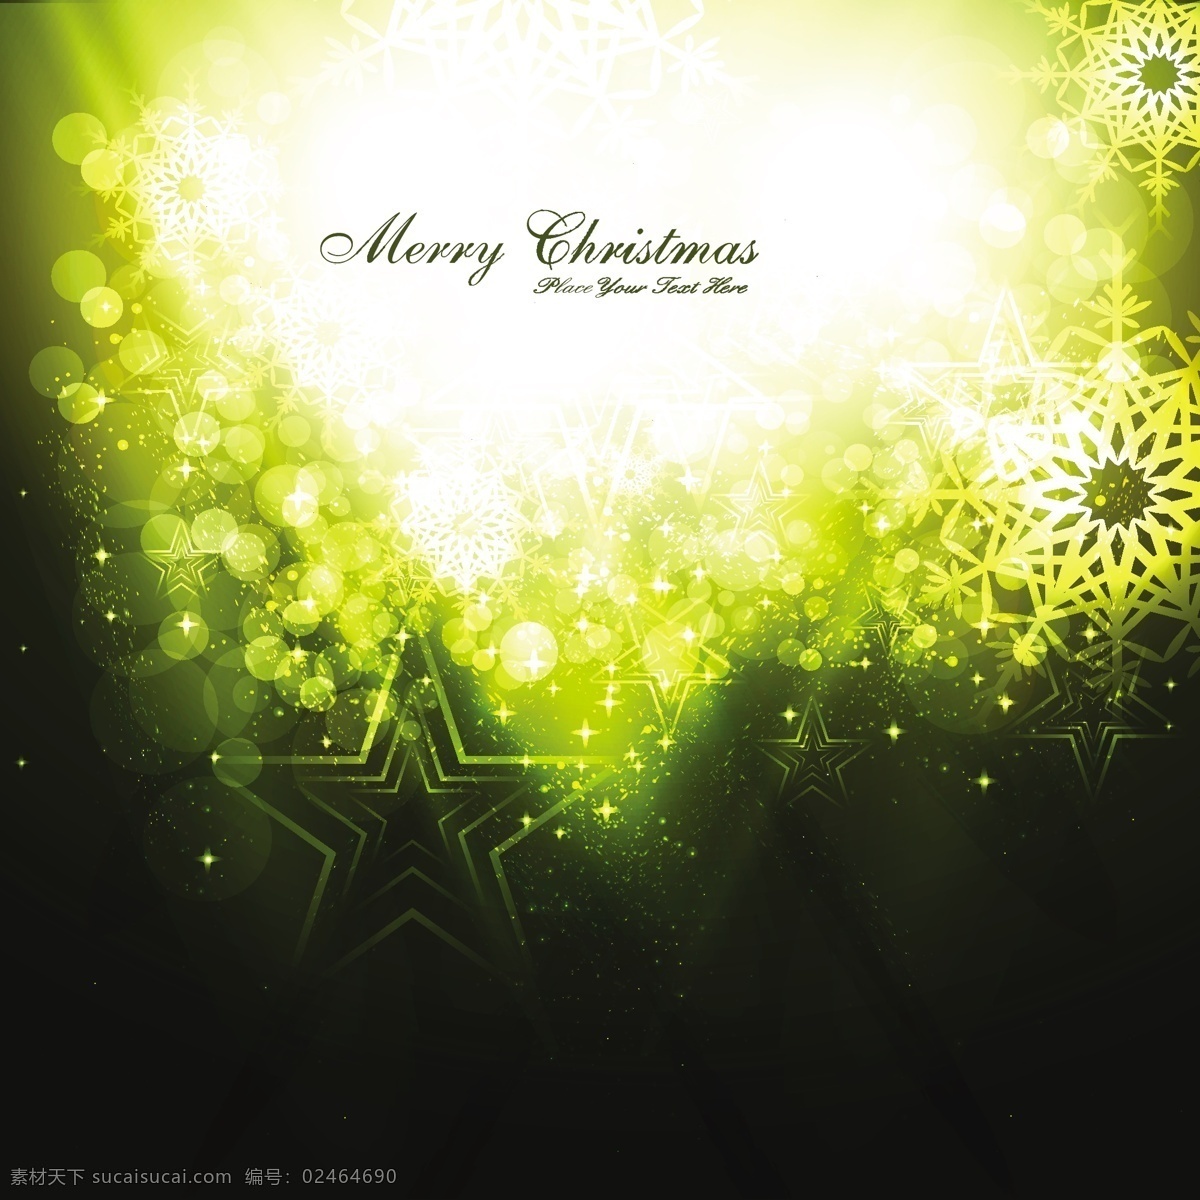 圣诞快乐 背景 圣诞星 冬天快乐 星星 圣诞背景 圣诞节 庆祝节日 背景虚化的 黄色的 黄色的背景 节日快乐 辉光 寒冬 大 下 明星的背景 明亮 圣诞 之星 黑色